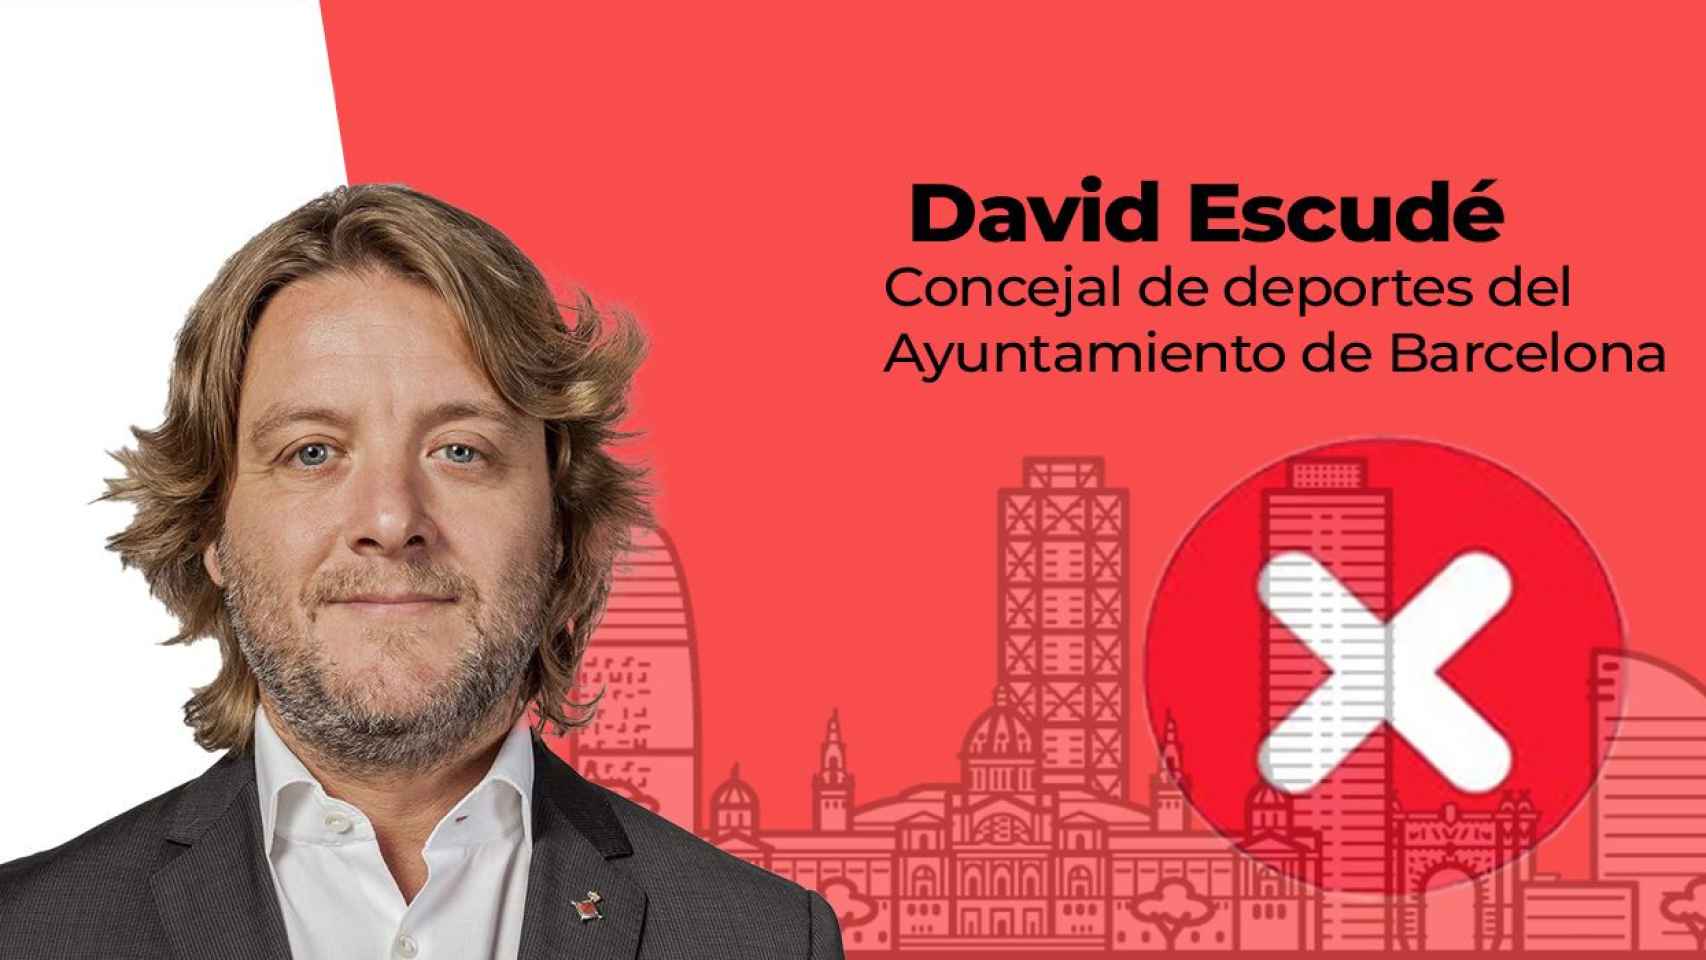 David Escudé